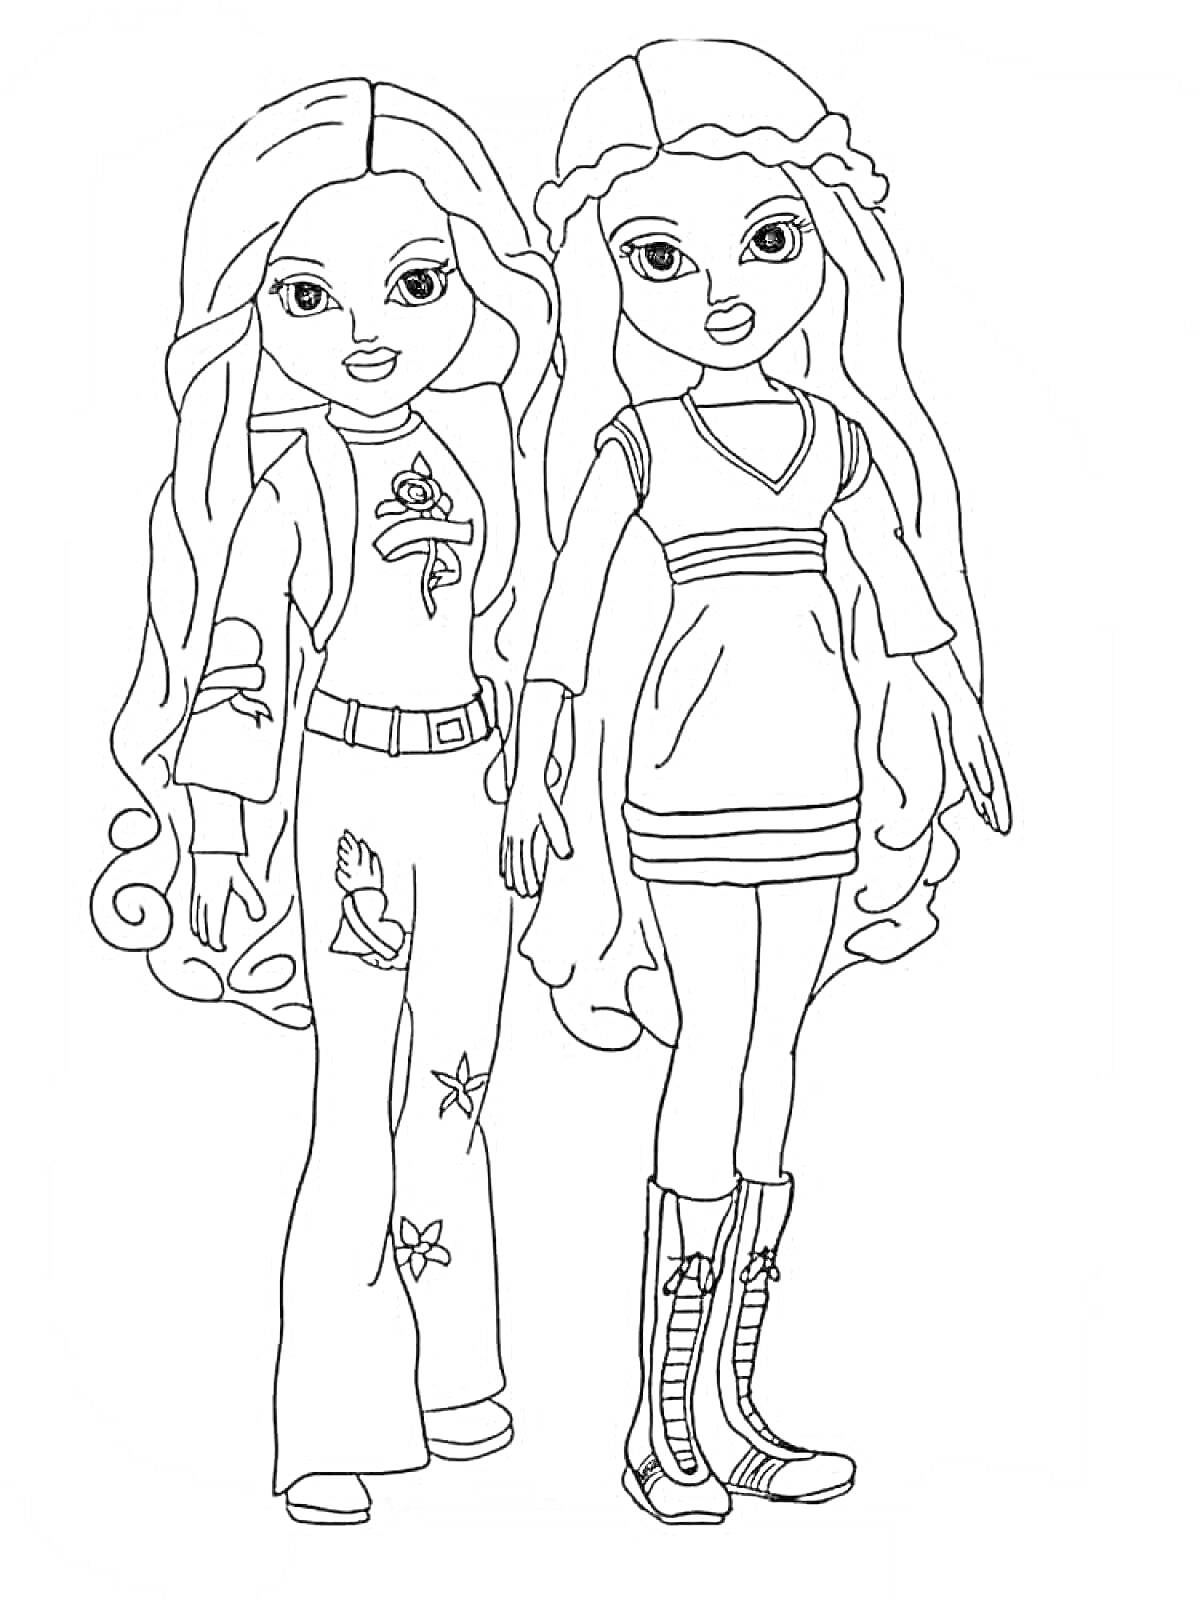 Раскраска Две девушки-модели с длинными волосами, украшениями на одежде и обуви